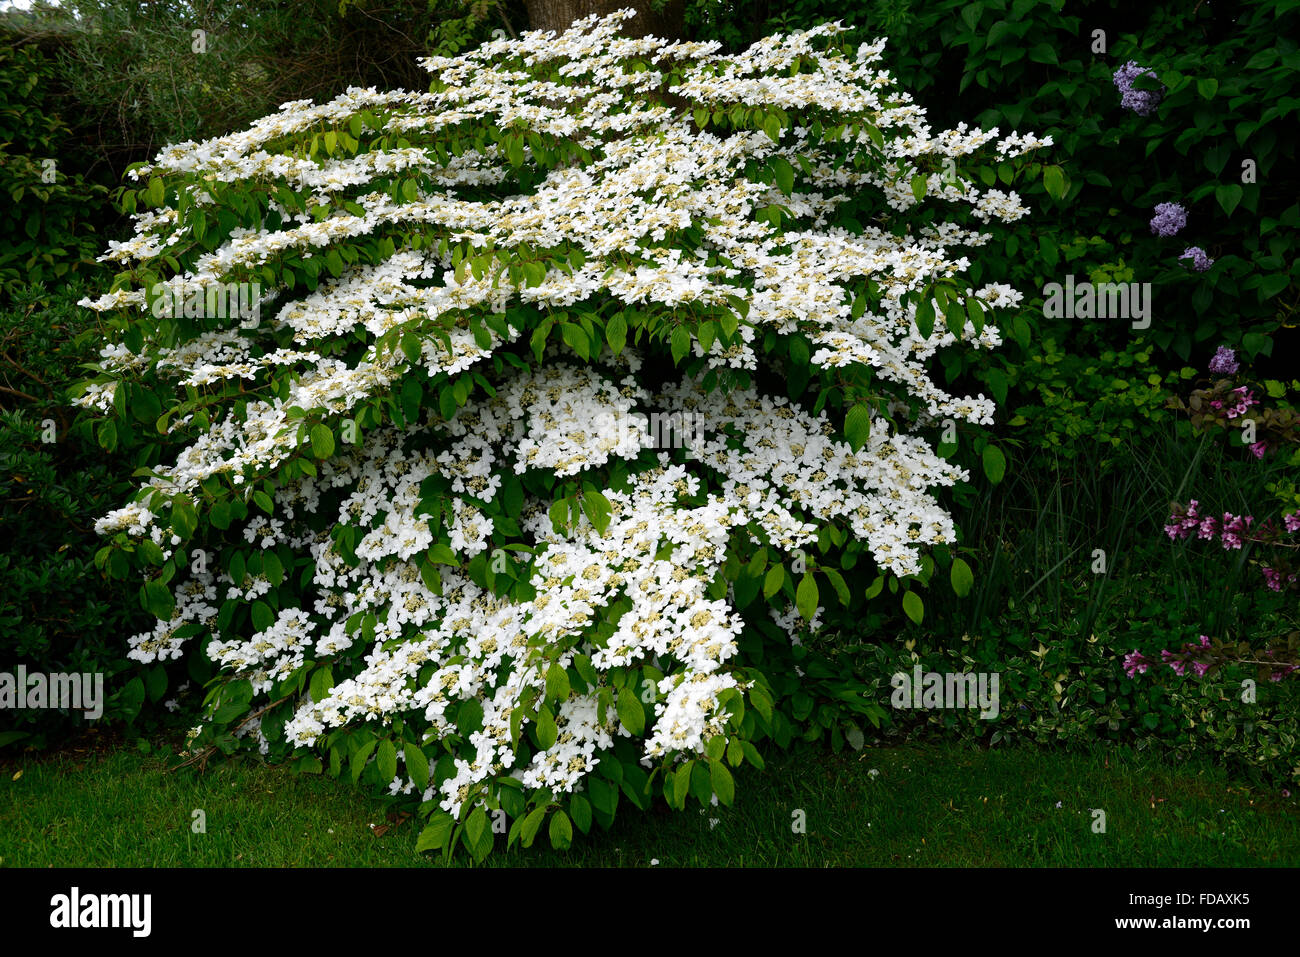 viburnum plicatum tomentosum mariesii agm Doublefile Viburnum white flower flowers shrub shrubs flowering spring RM Floral Stock Photo